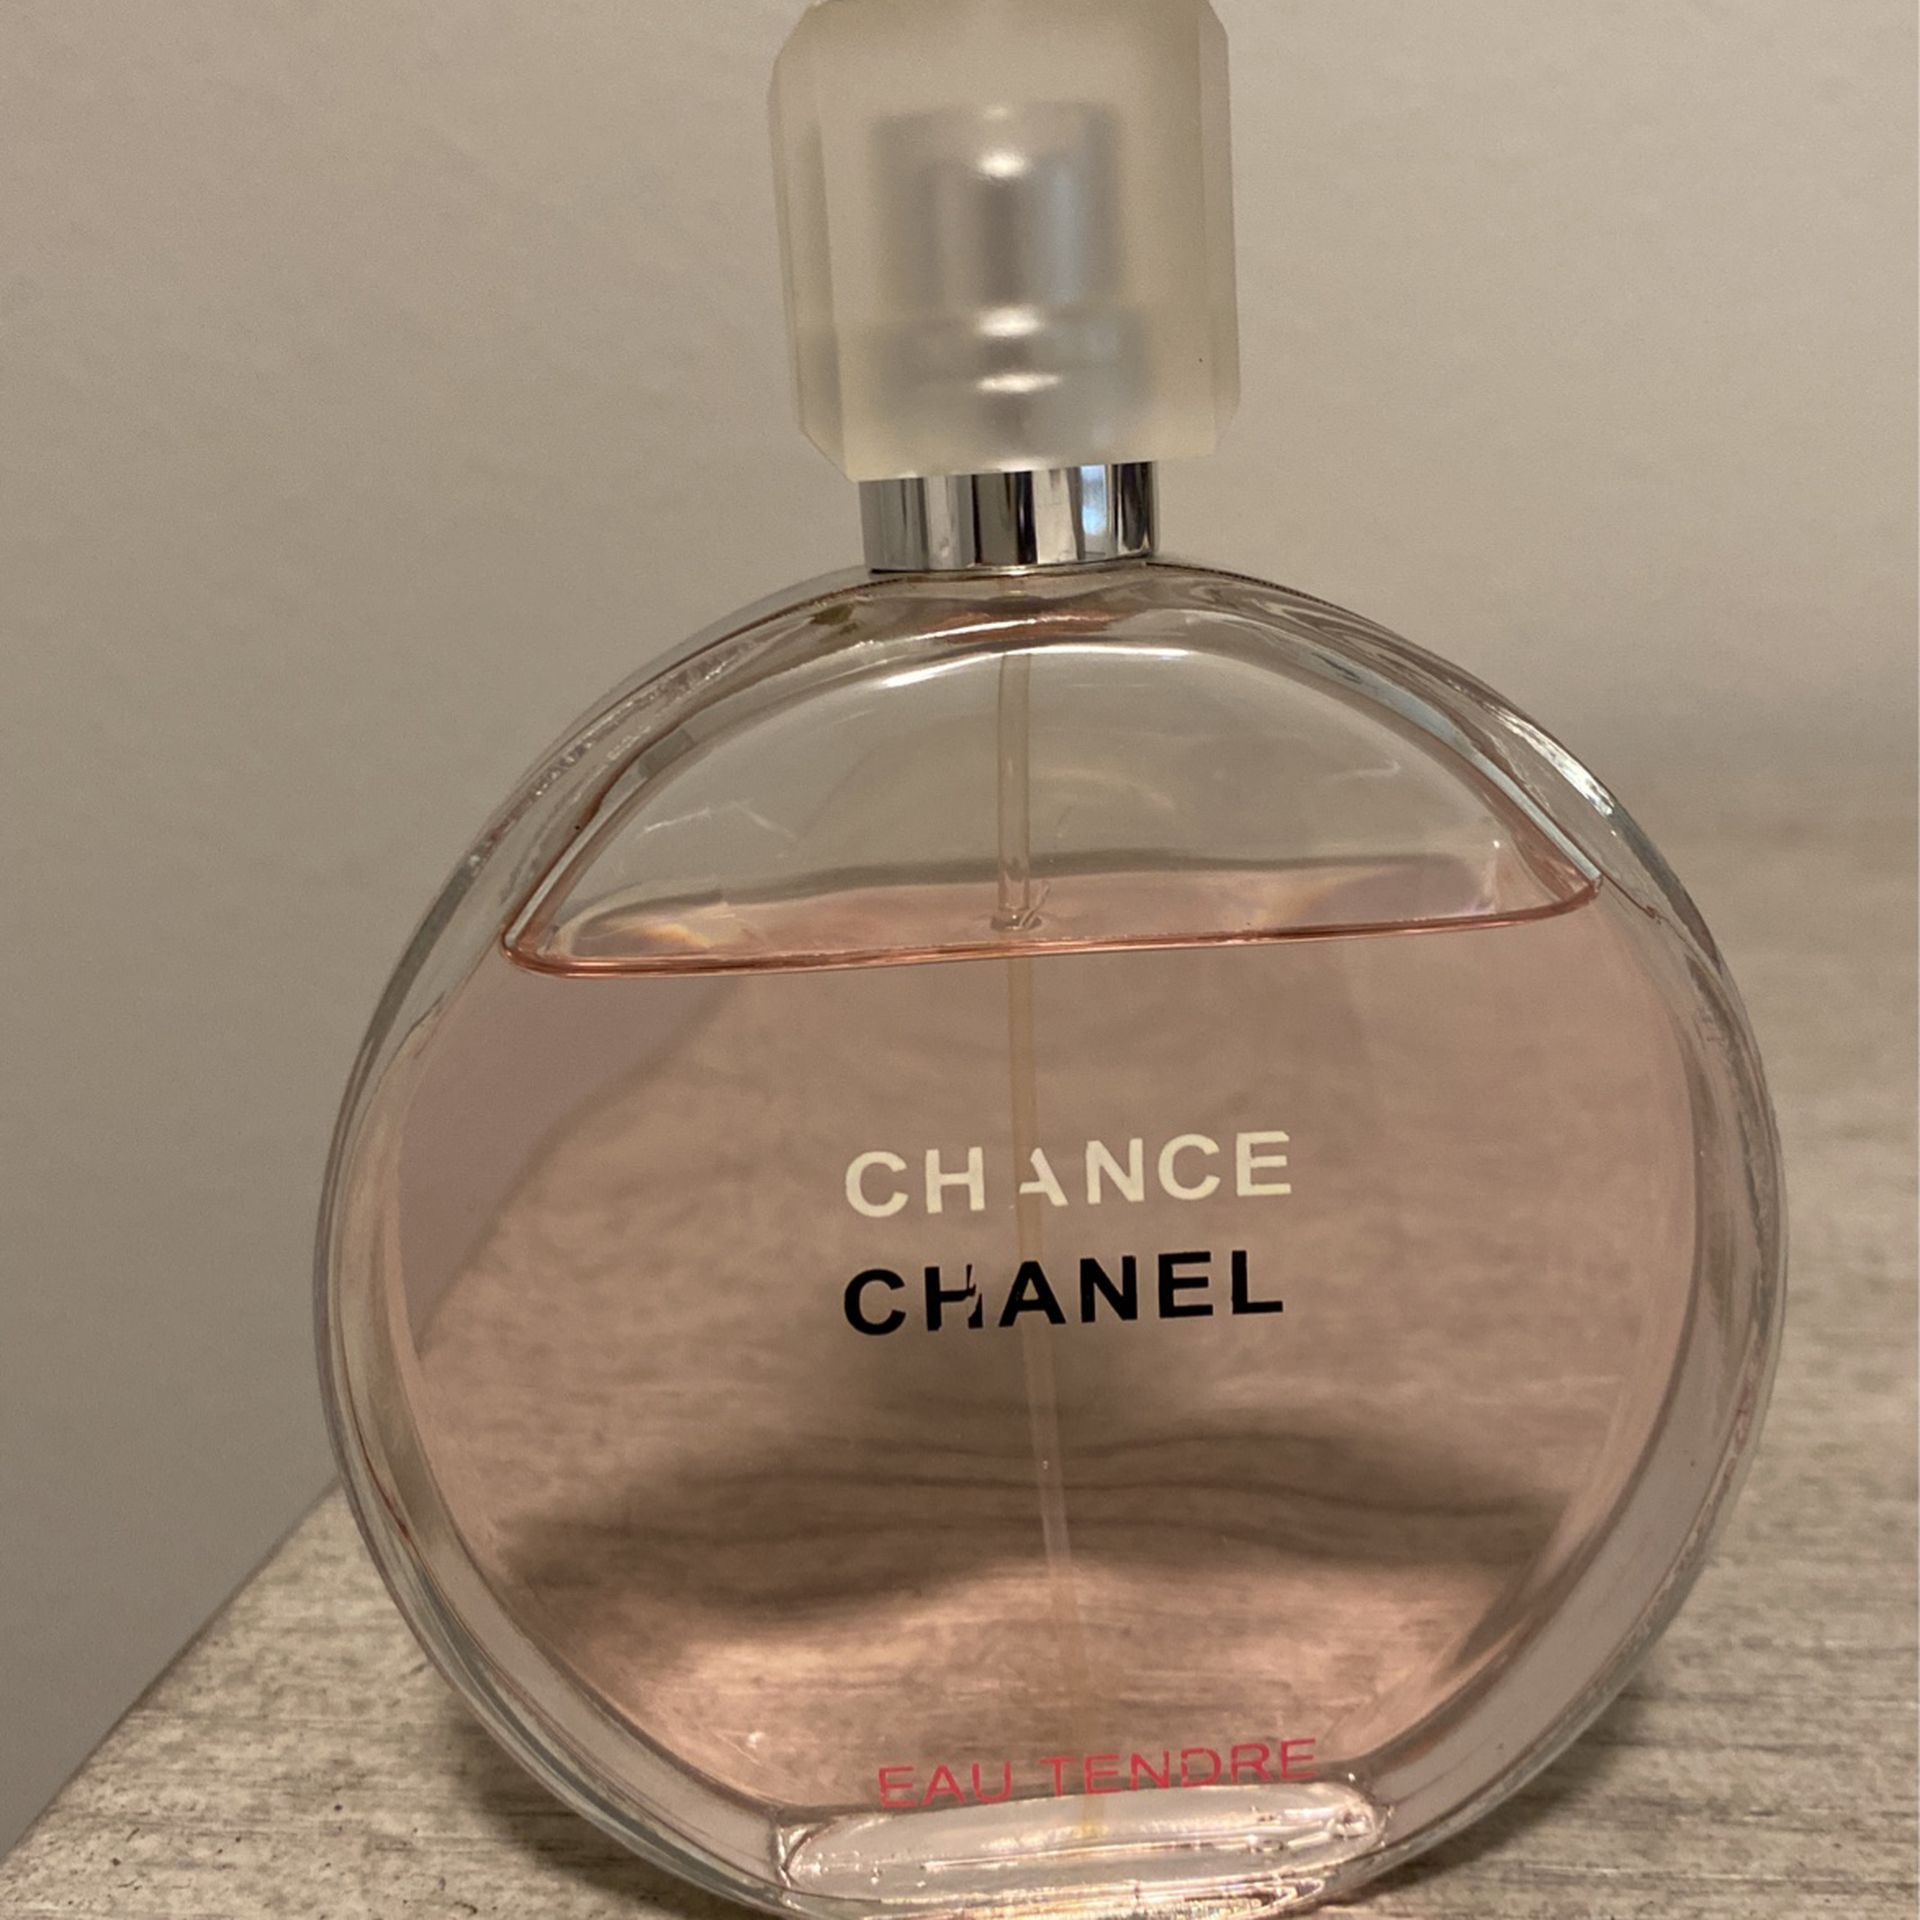 Chanel Chance Eau Tendre Eau De Parfum 3.4 oz Brand New Sealed Authentic  for Sale in Laguna Niguel, CA - OfferUp